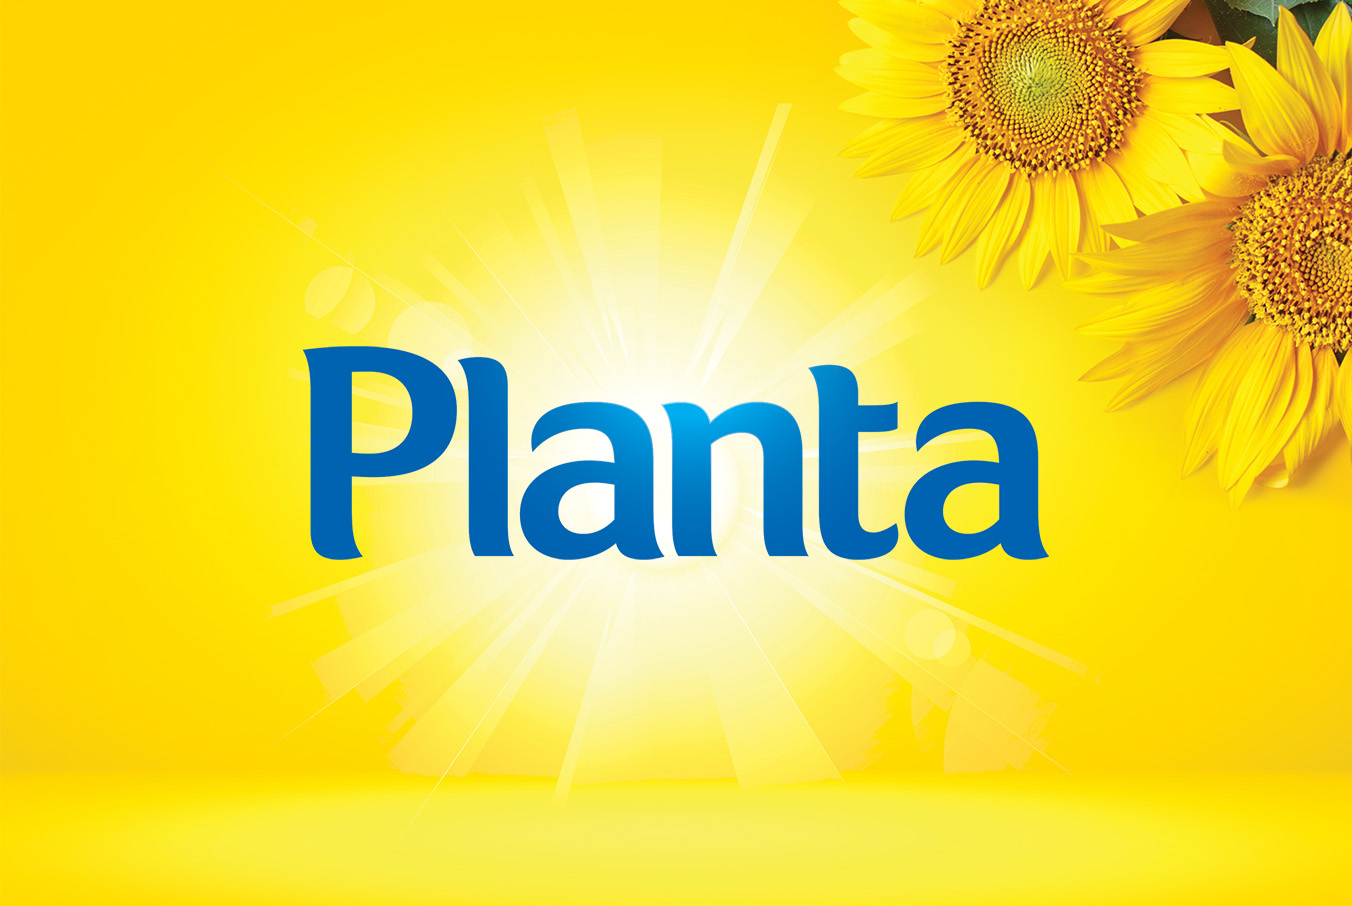 Planta_02